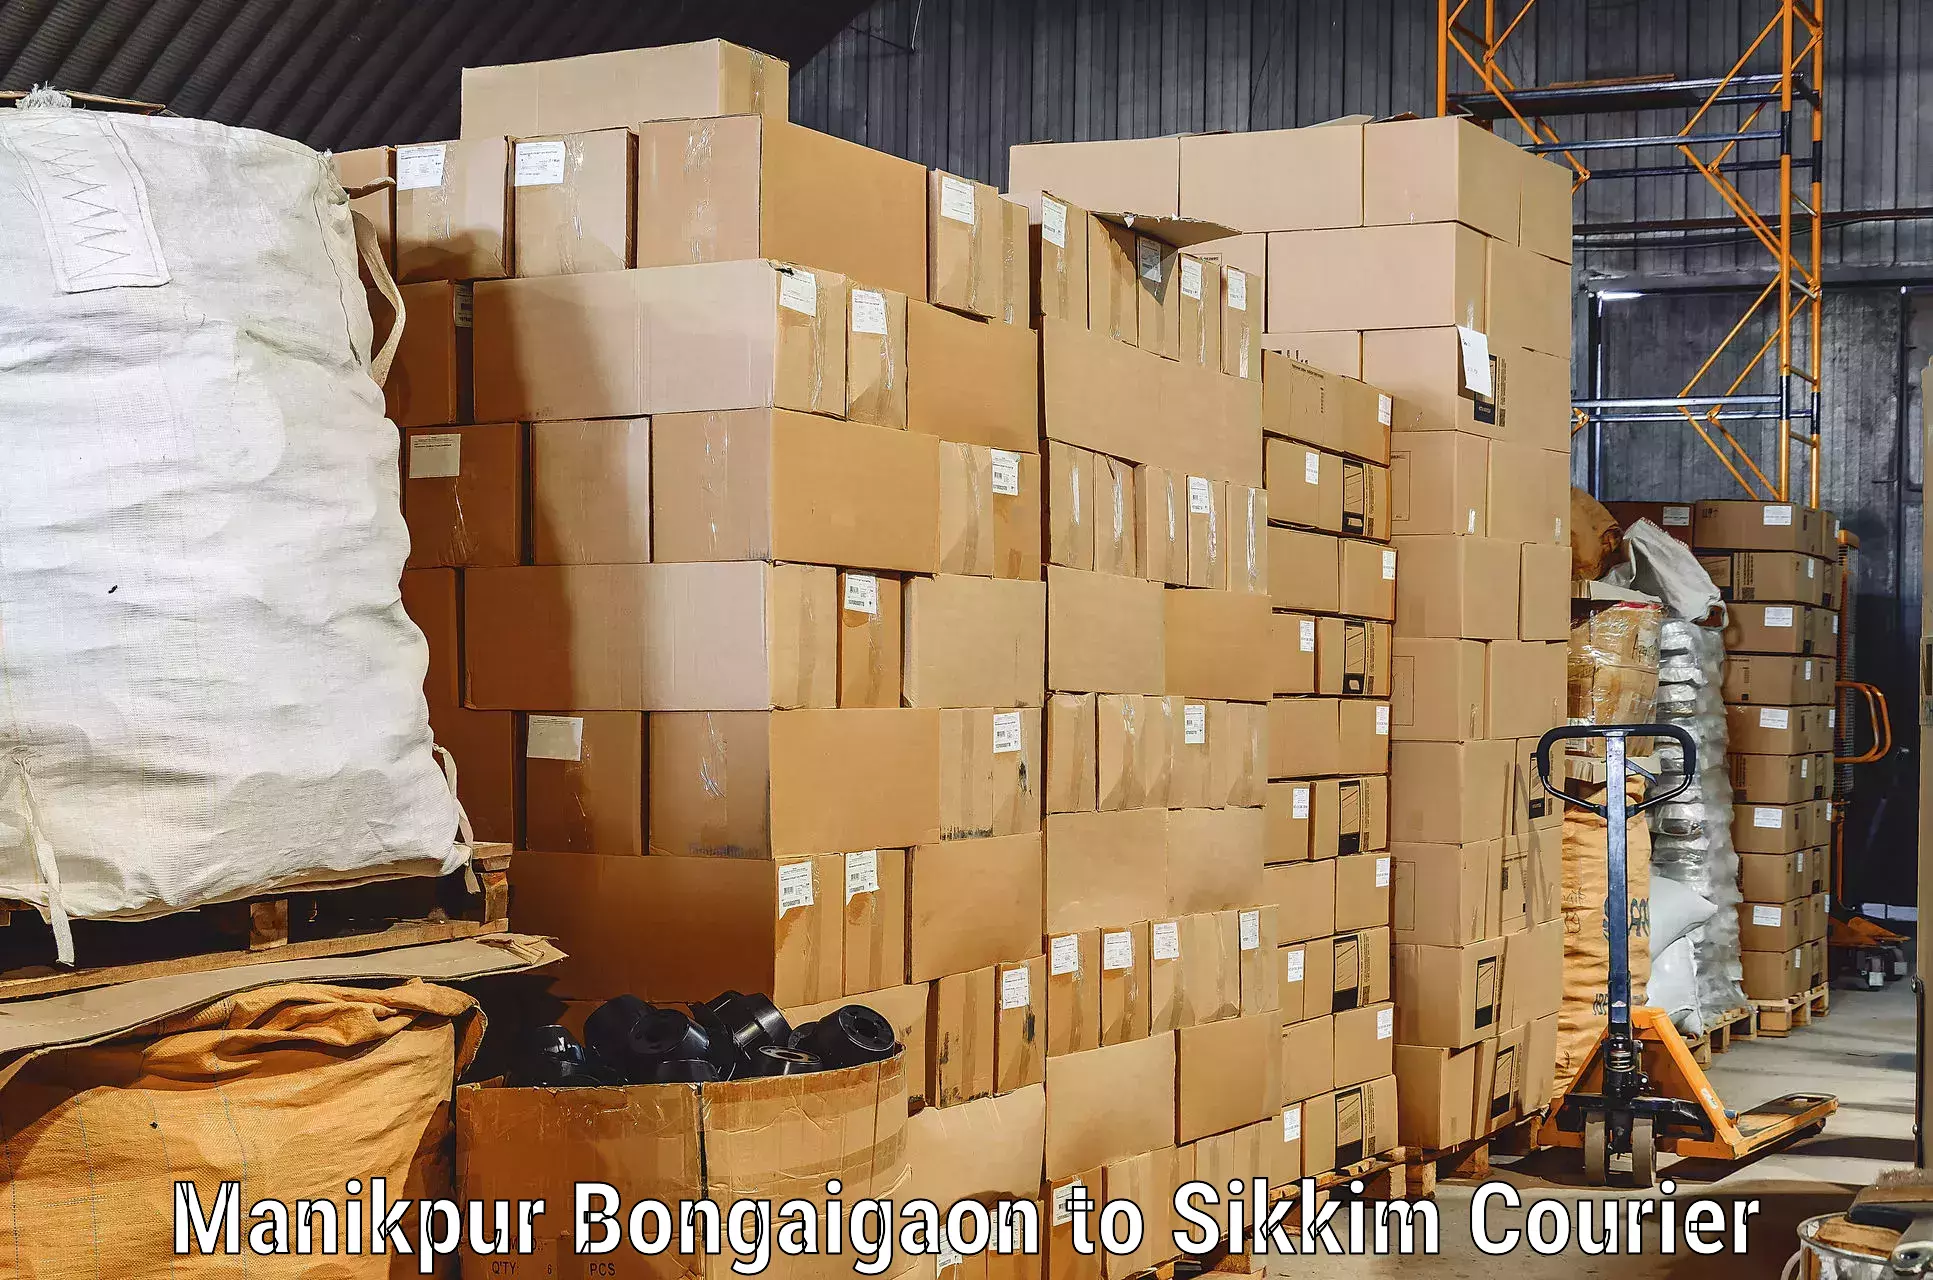 Stress-free furniture moving Manikpur Bongaigaon to Geyzing